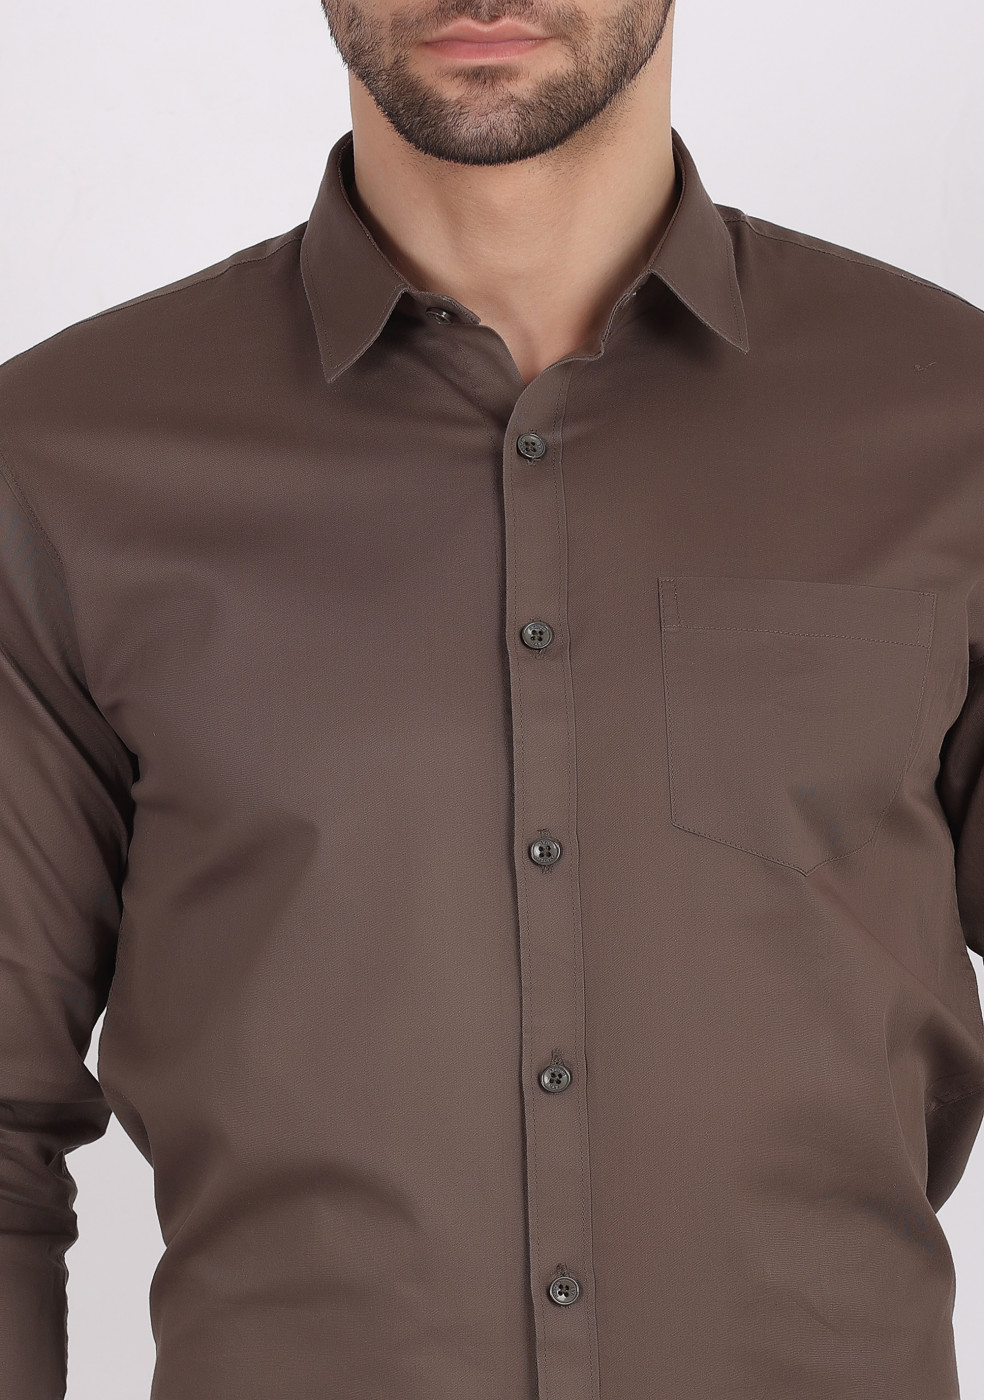 ASHTOM Dark Gray Plain Cotton Shirt For Men